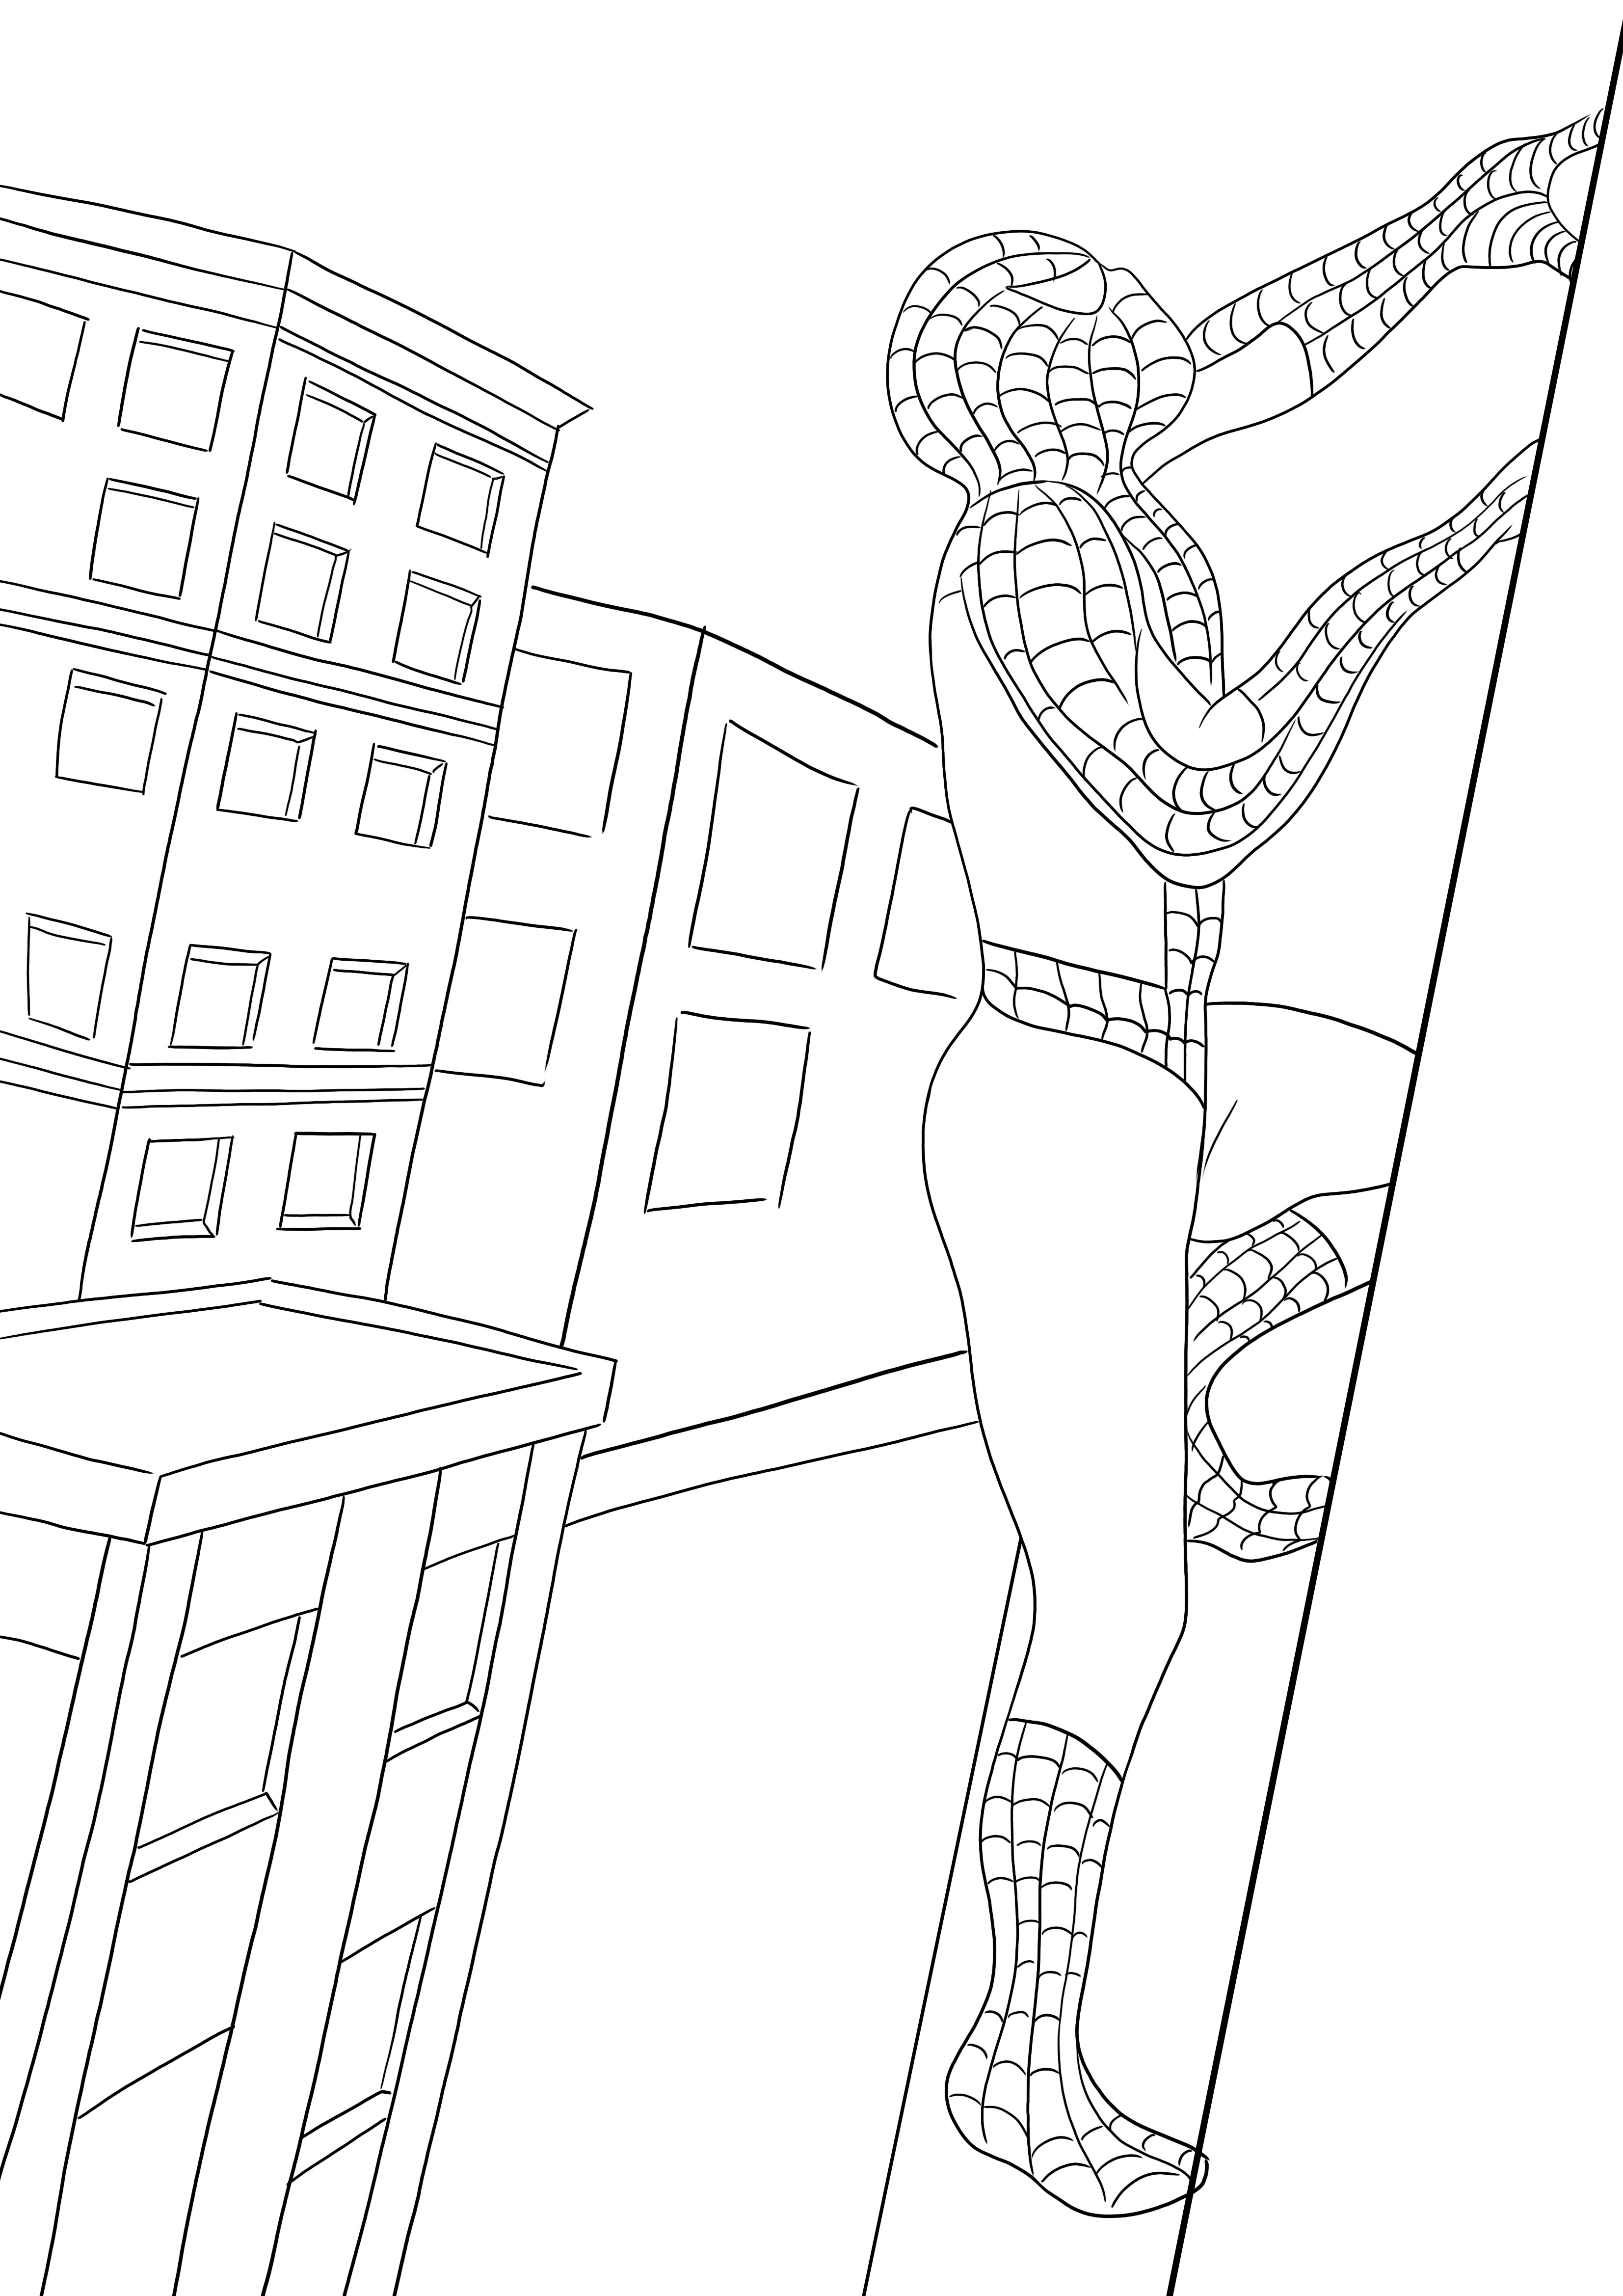 Un stampabile gratuito di Spiderman che si arrampica sull'edificio: i bambini possono facilmente colorarlo